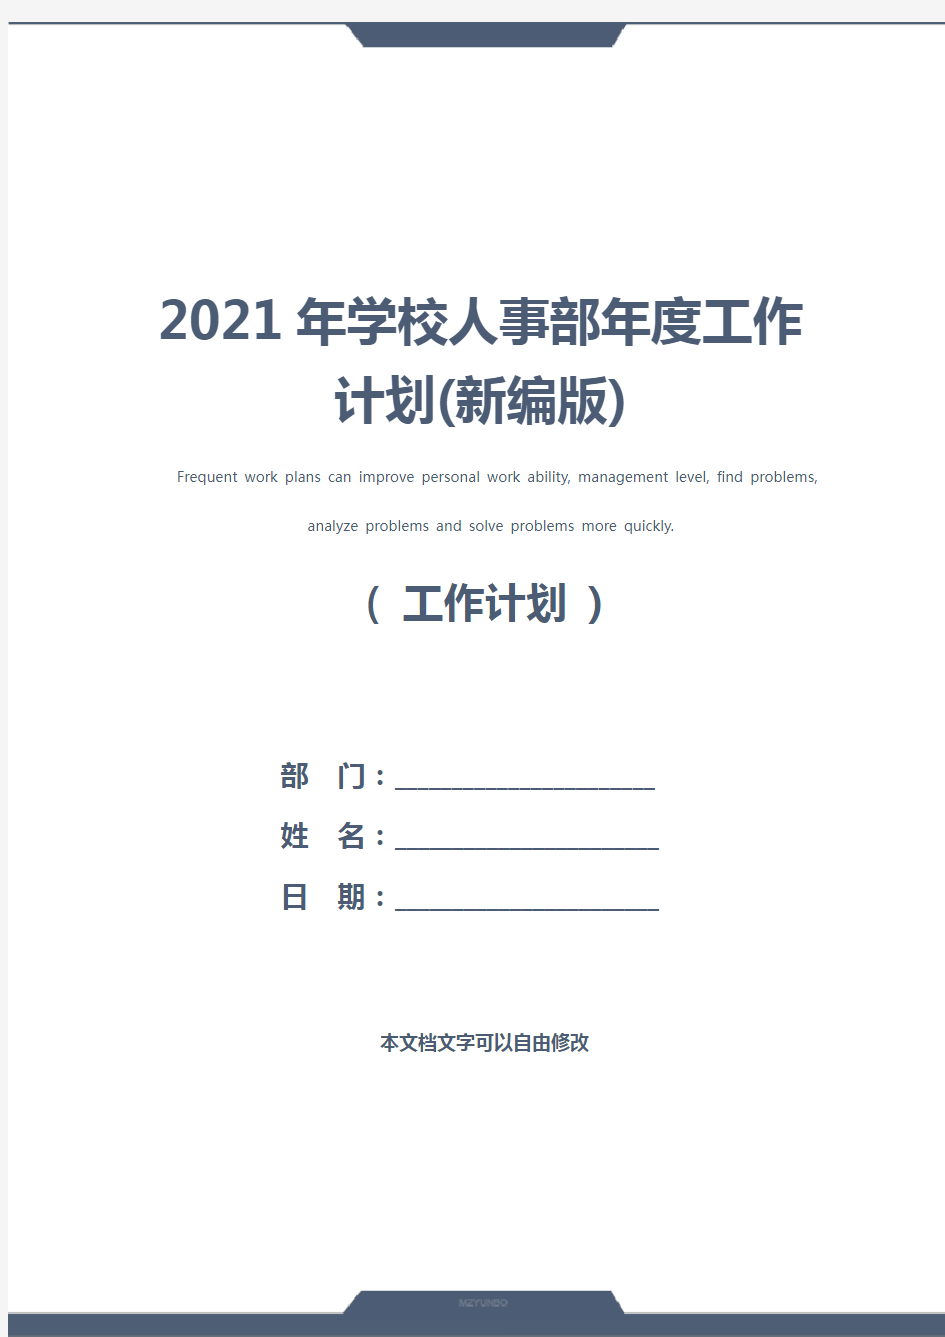 2021年学校人事部年度工作计划(新编版)